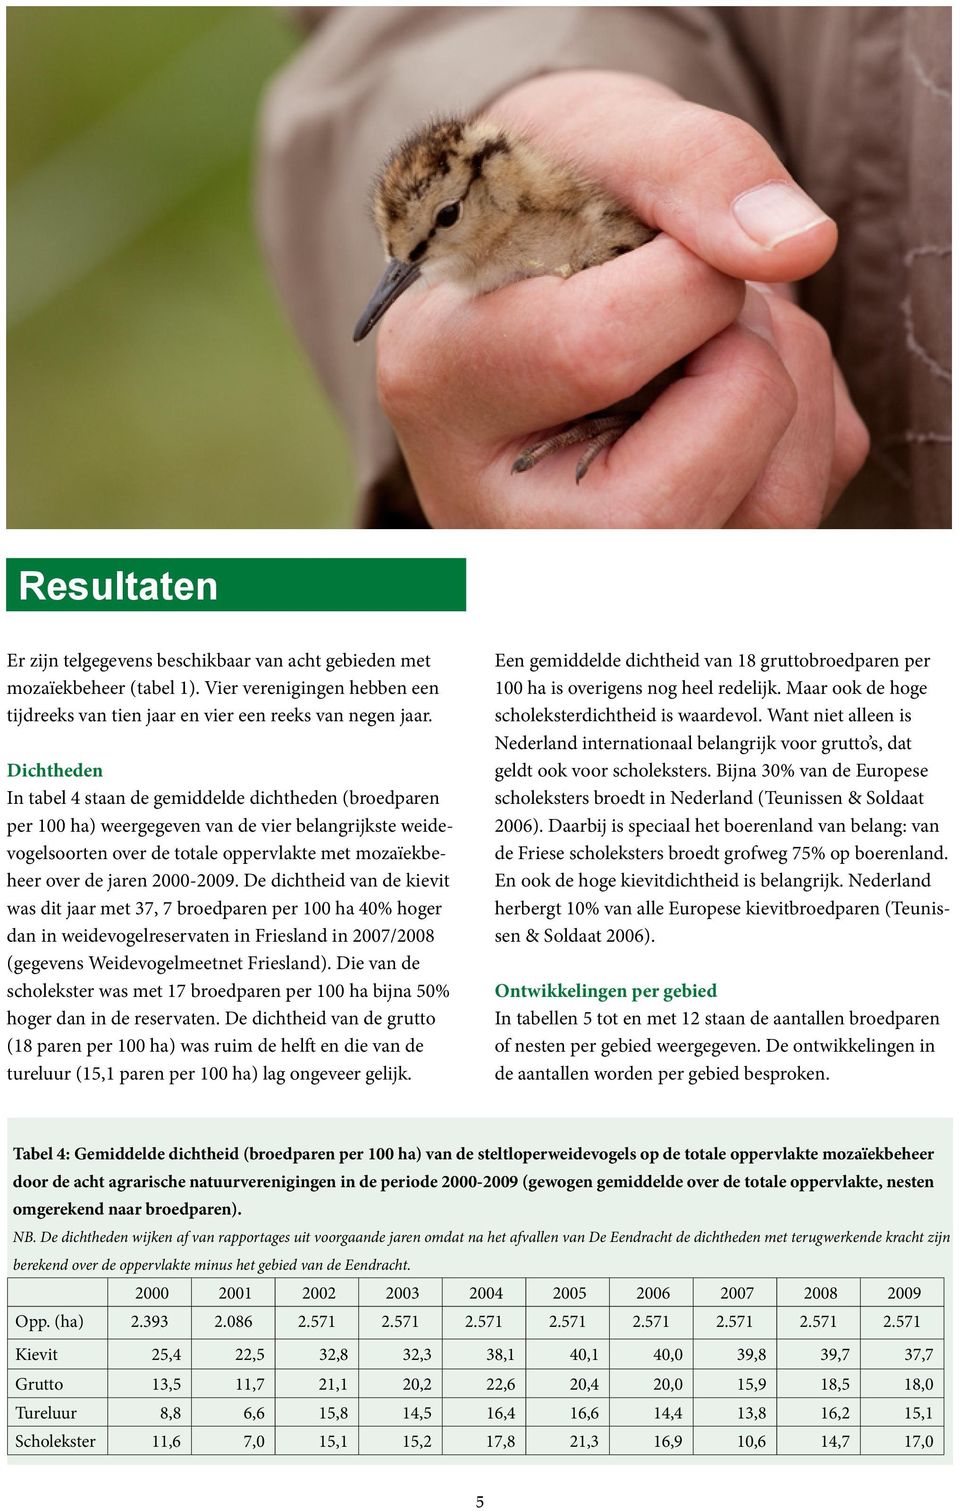 De dichtheid van de kievit was dit jaar met 37, 7 broedparen per ha 4% hoger dan in weidevogelreservaten in Friesland in / (gegevens Weidevogelmeetnet Friesland).